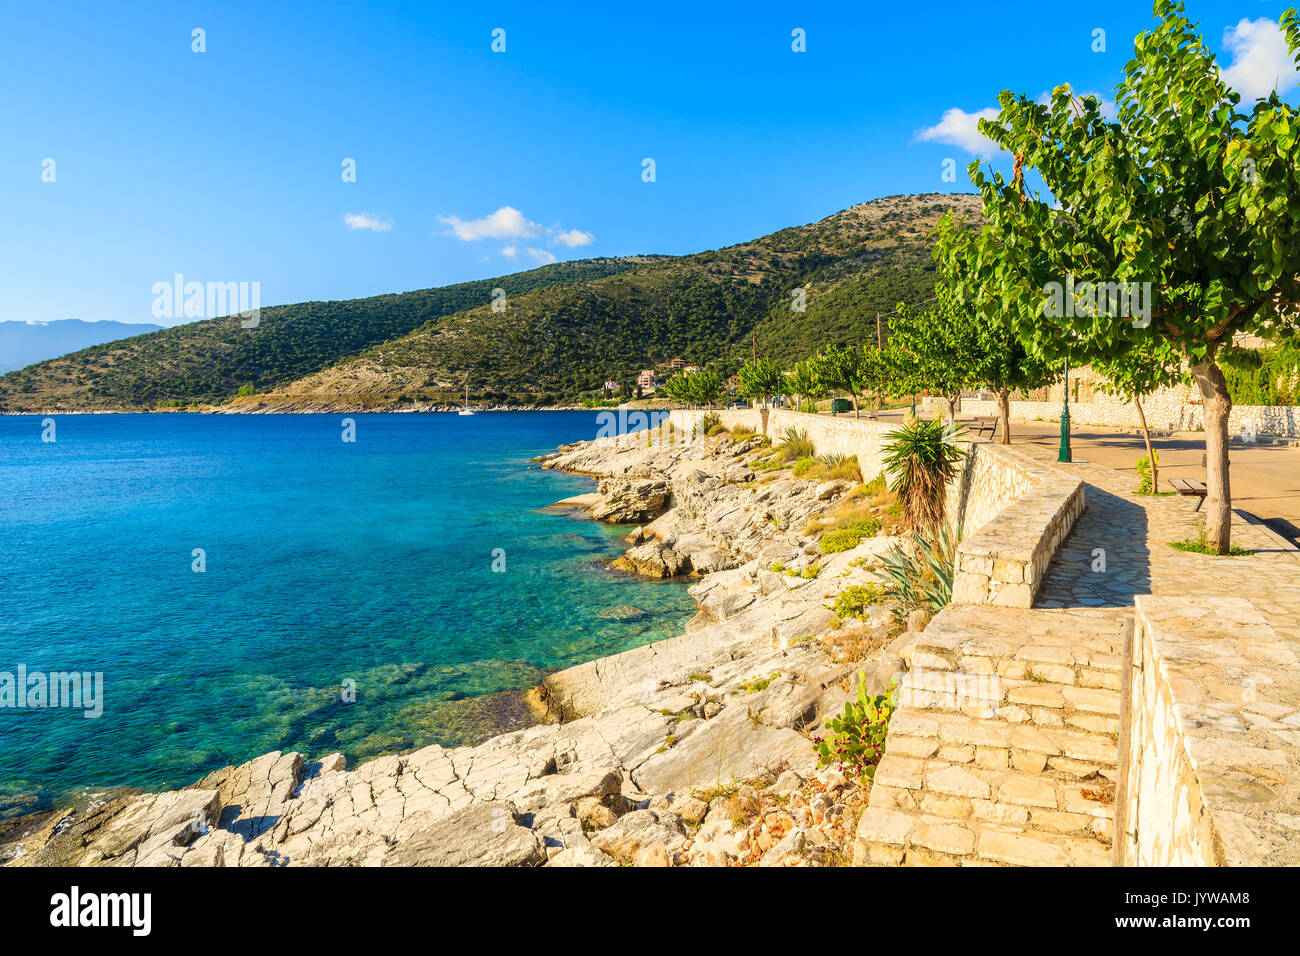 Coastal path with agave plants along sea in Agia Efimia village, Kefalonia island, Greece Stock Photo